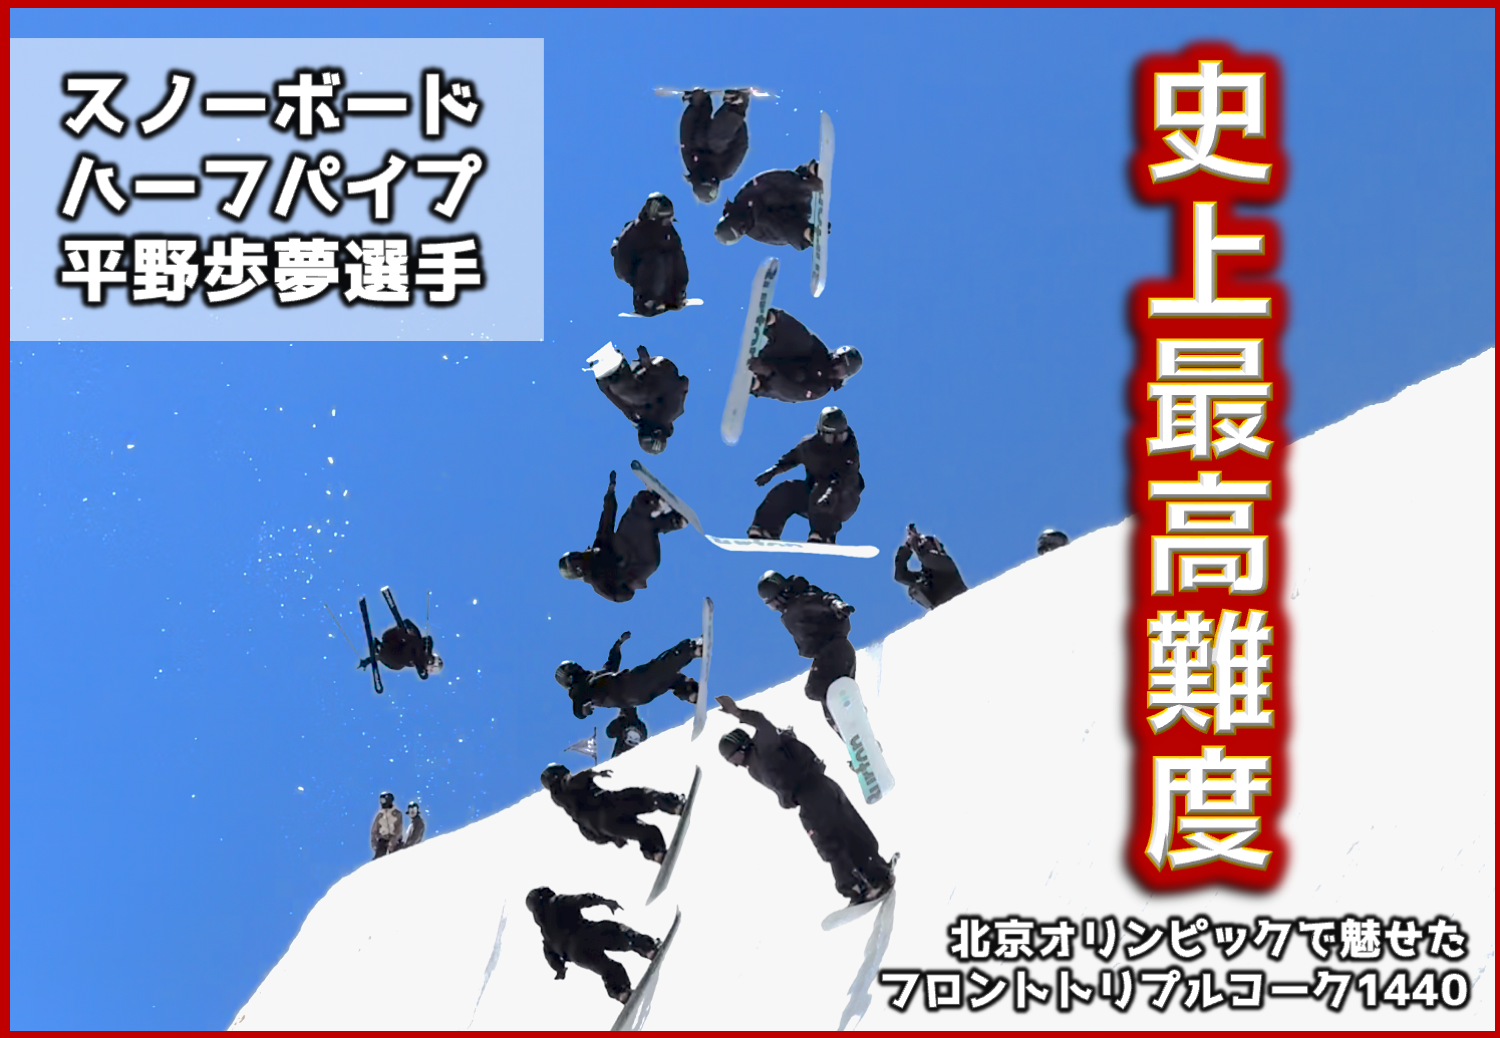 【スノーボード】平野歩夢選手の史上最高難度の最新練習映像!!【トリプルコーク1440】